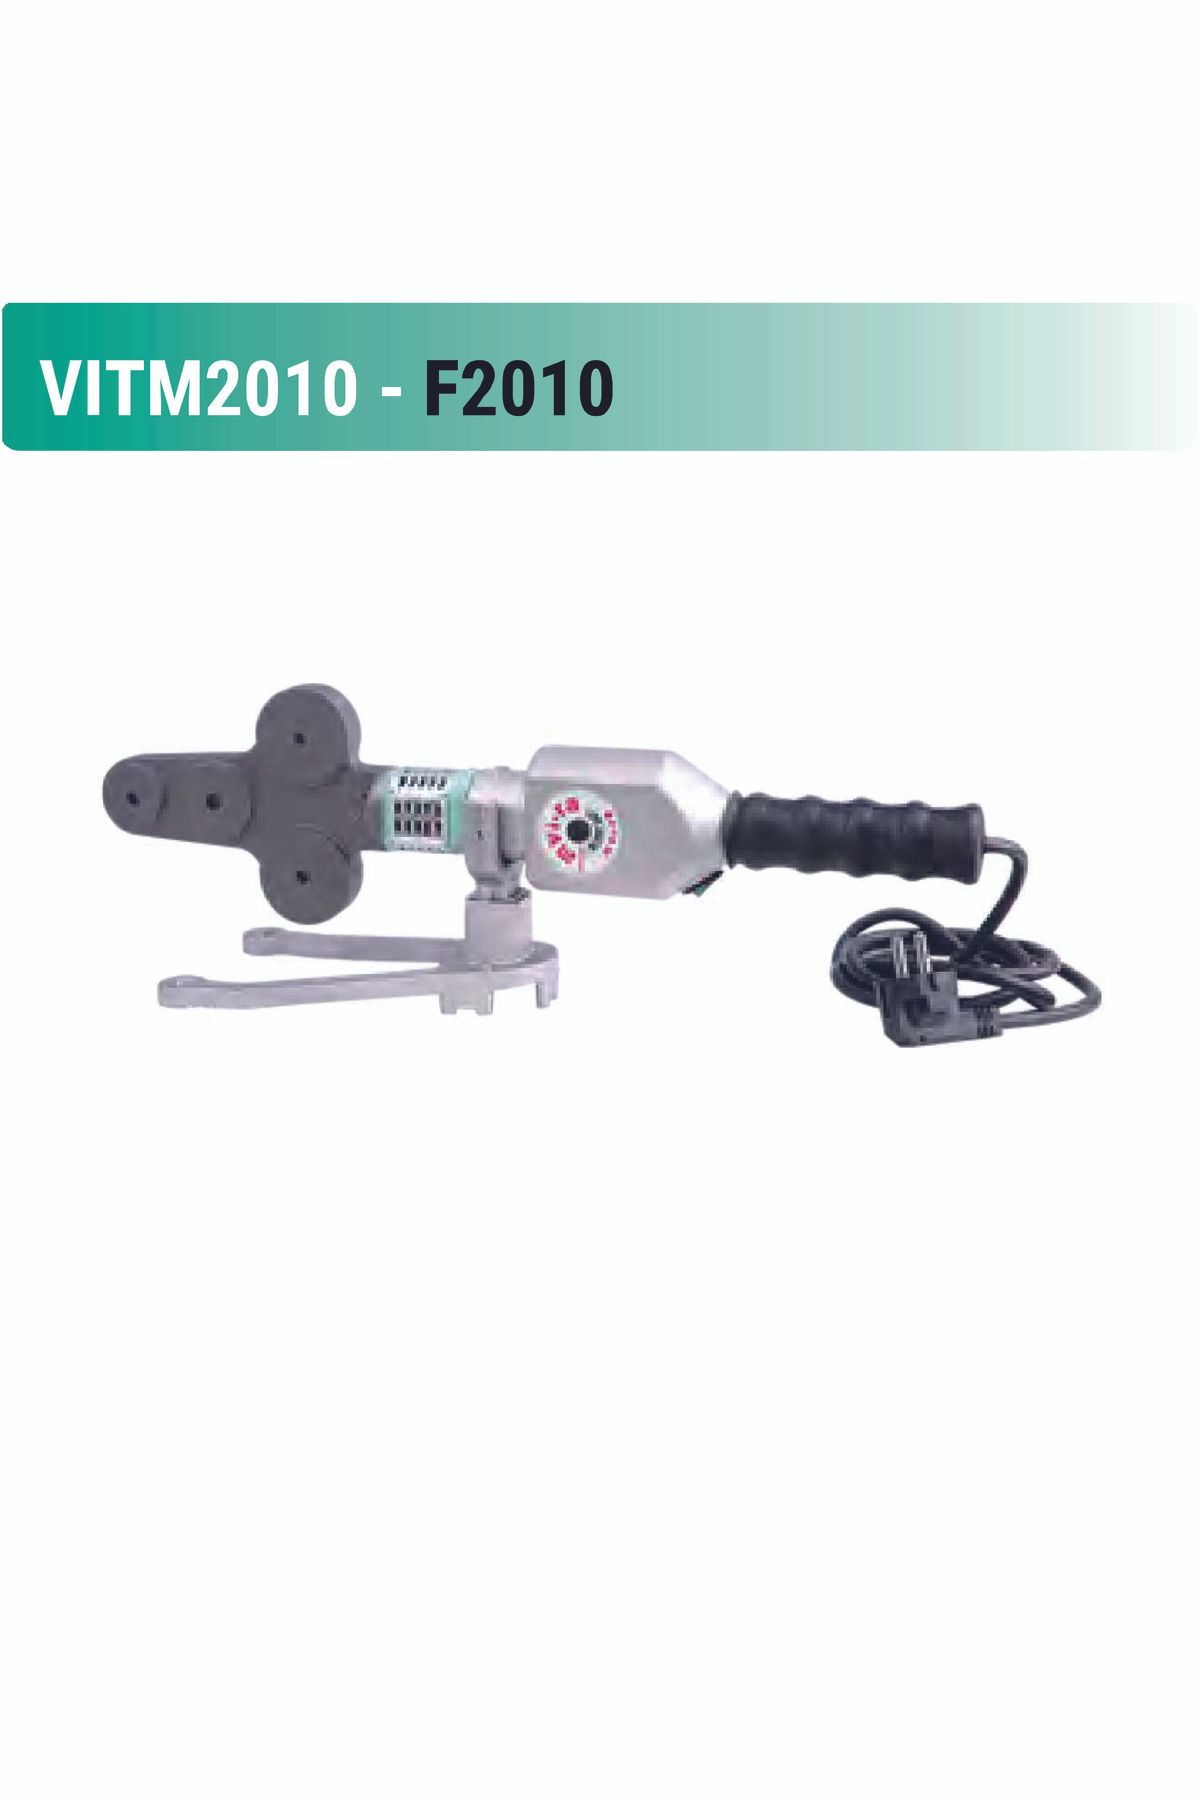 Genel Markalar PVC Kaynak Vi-ra F-2010 Pprc Plastik Boru Kaynak Makinası Ayaklı Tek Vıf2010 2 Yıl 400 ve üzeri